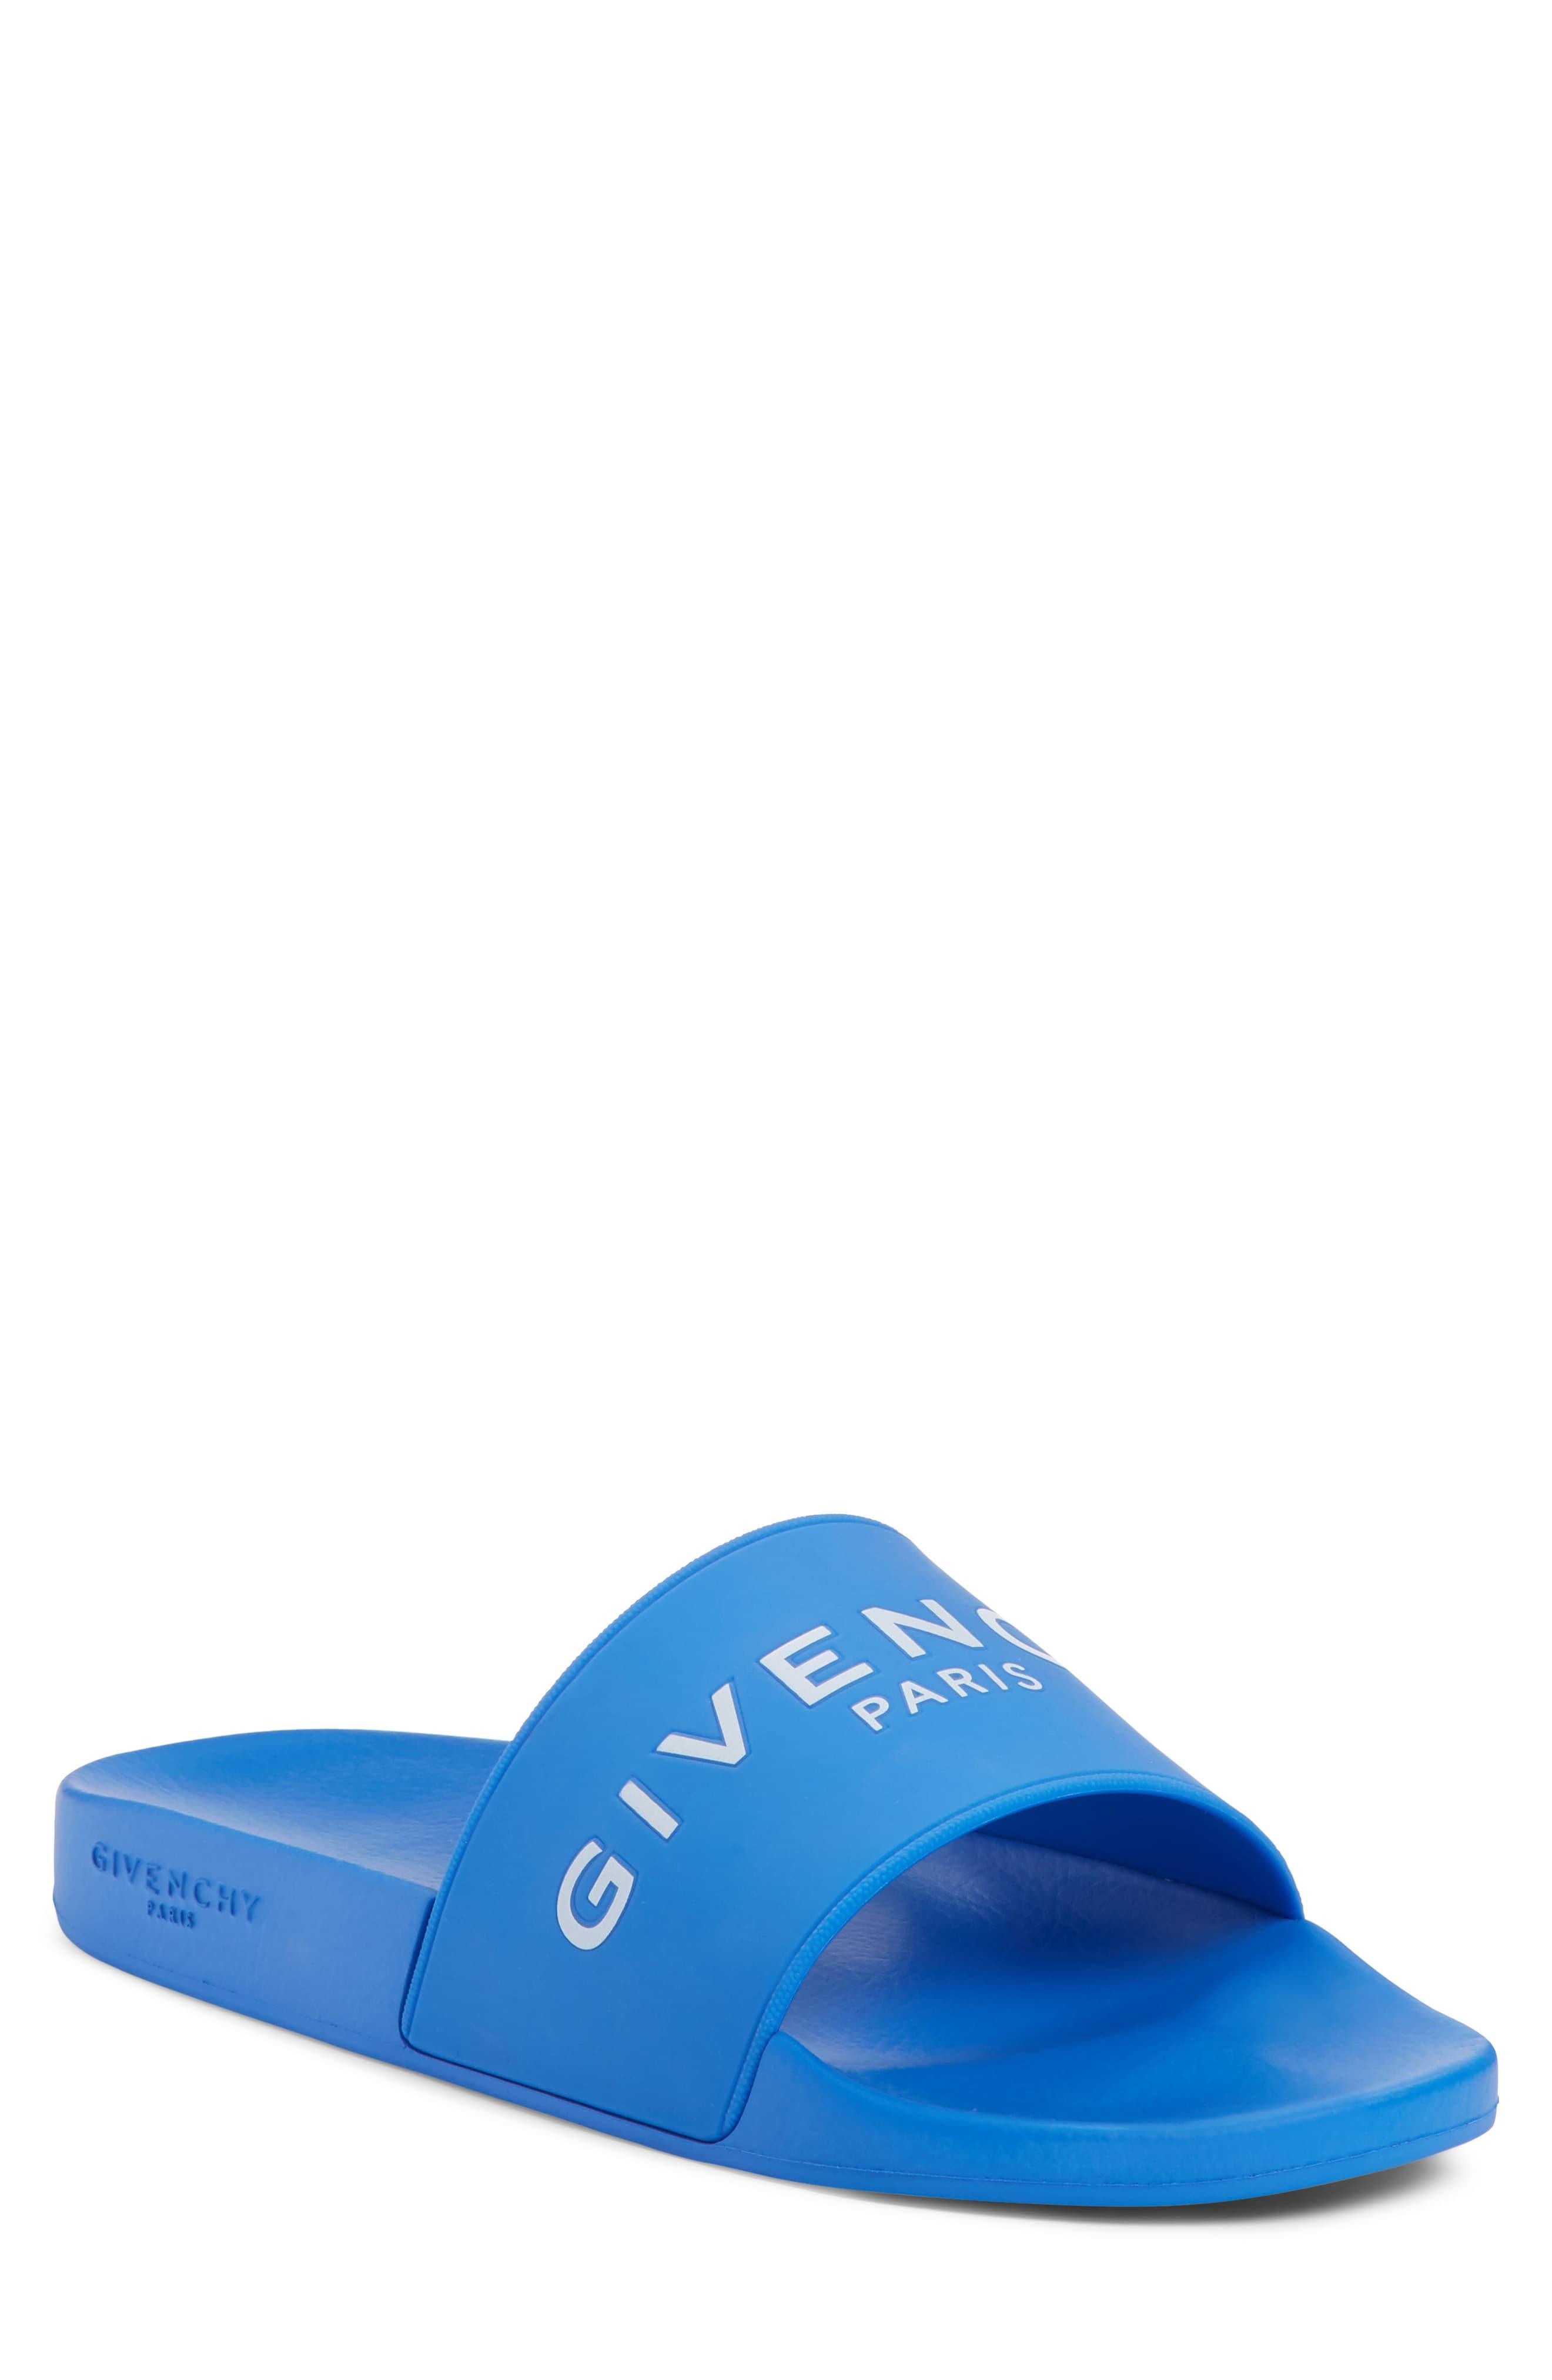 blue givenchy slides